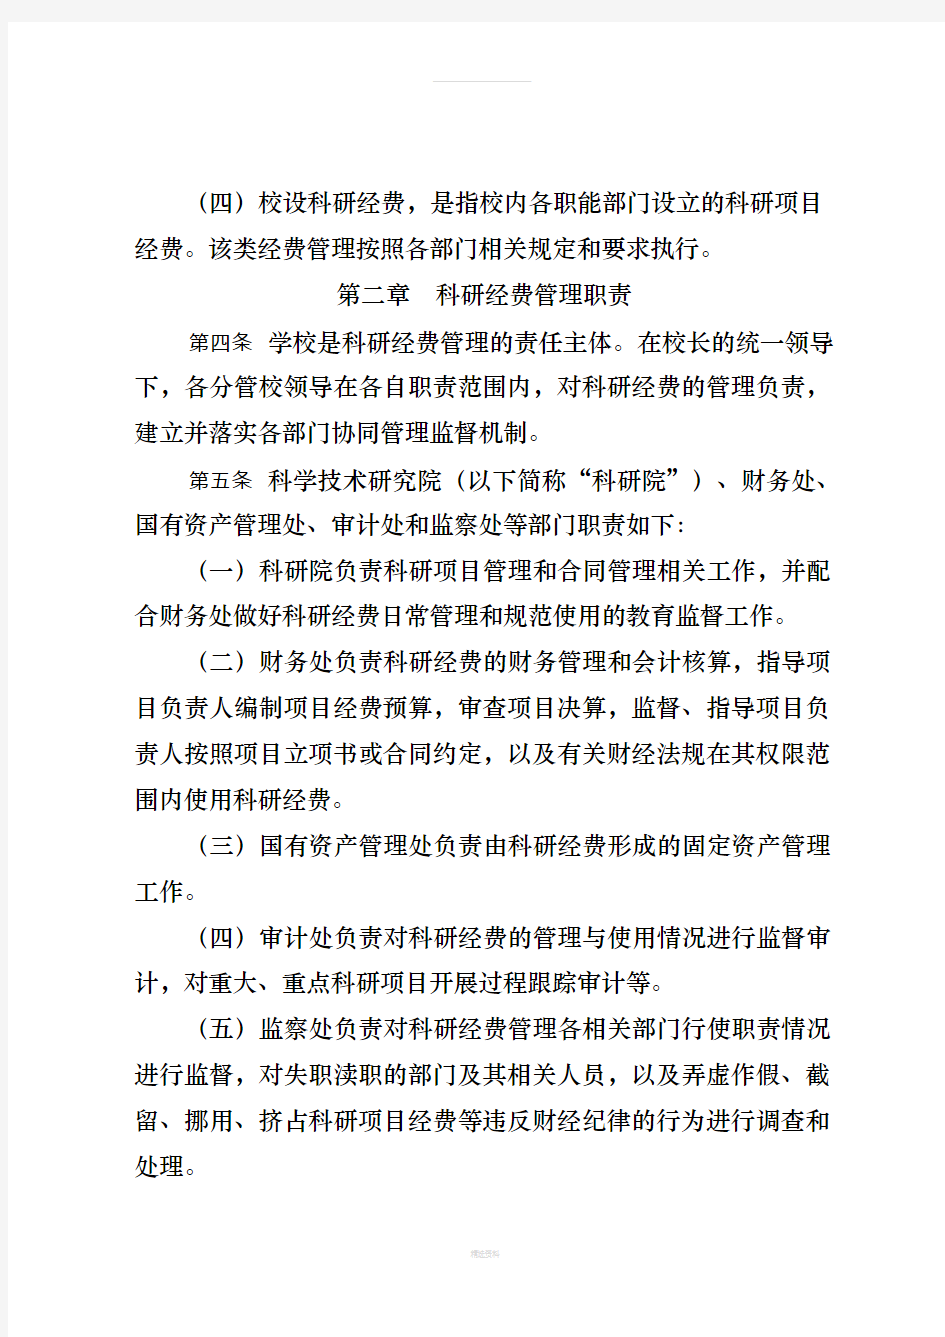 南京航空航天大学科研项目经费管理办法